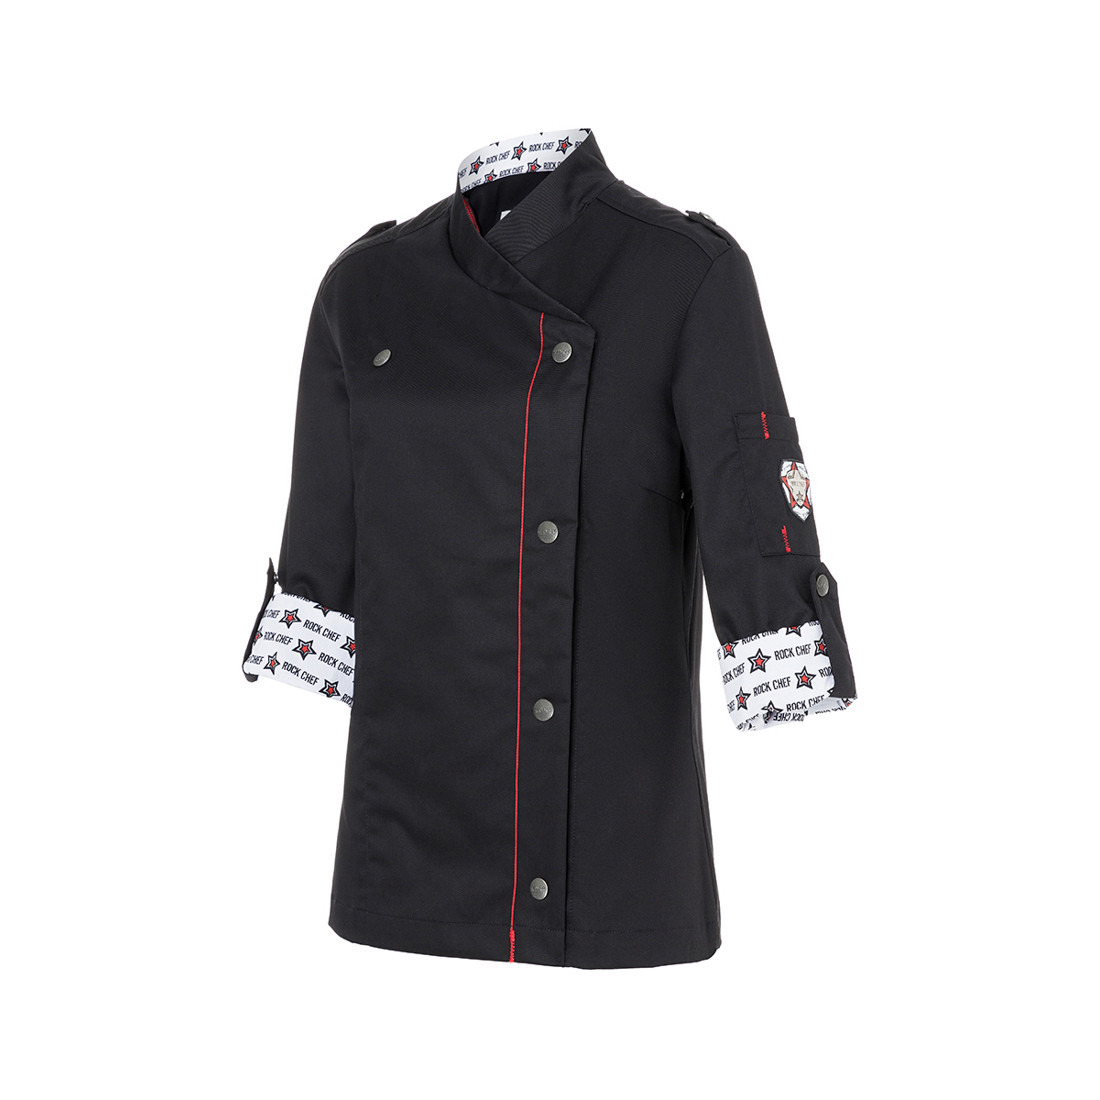 Ladies' Chef Jacket ROCK CHEF® - Safetywear